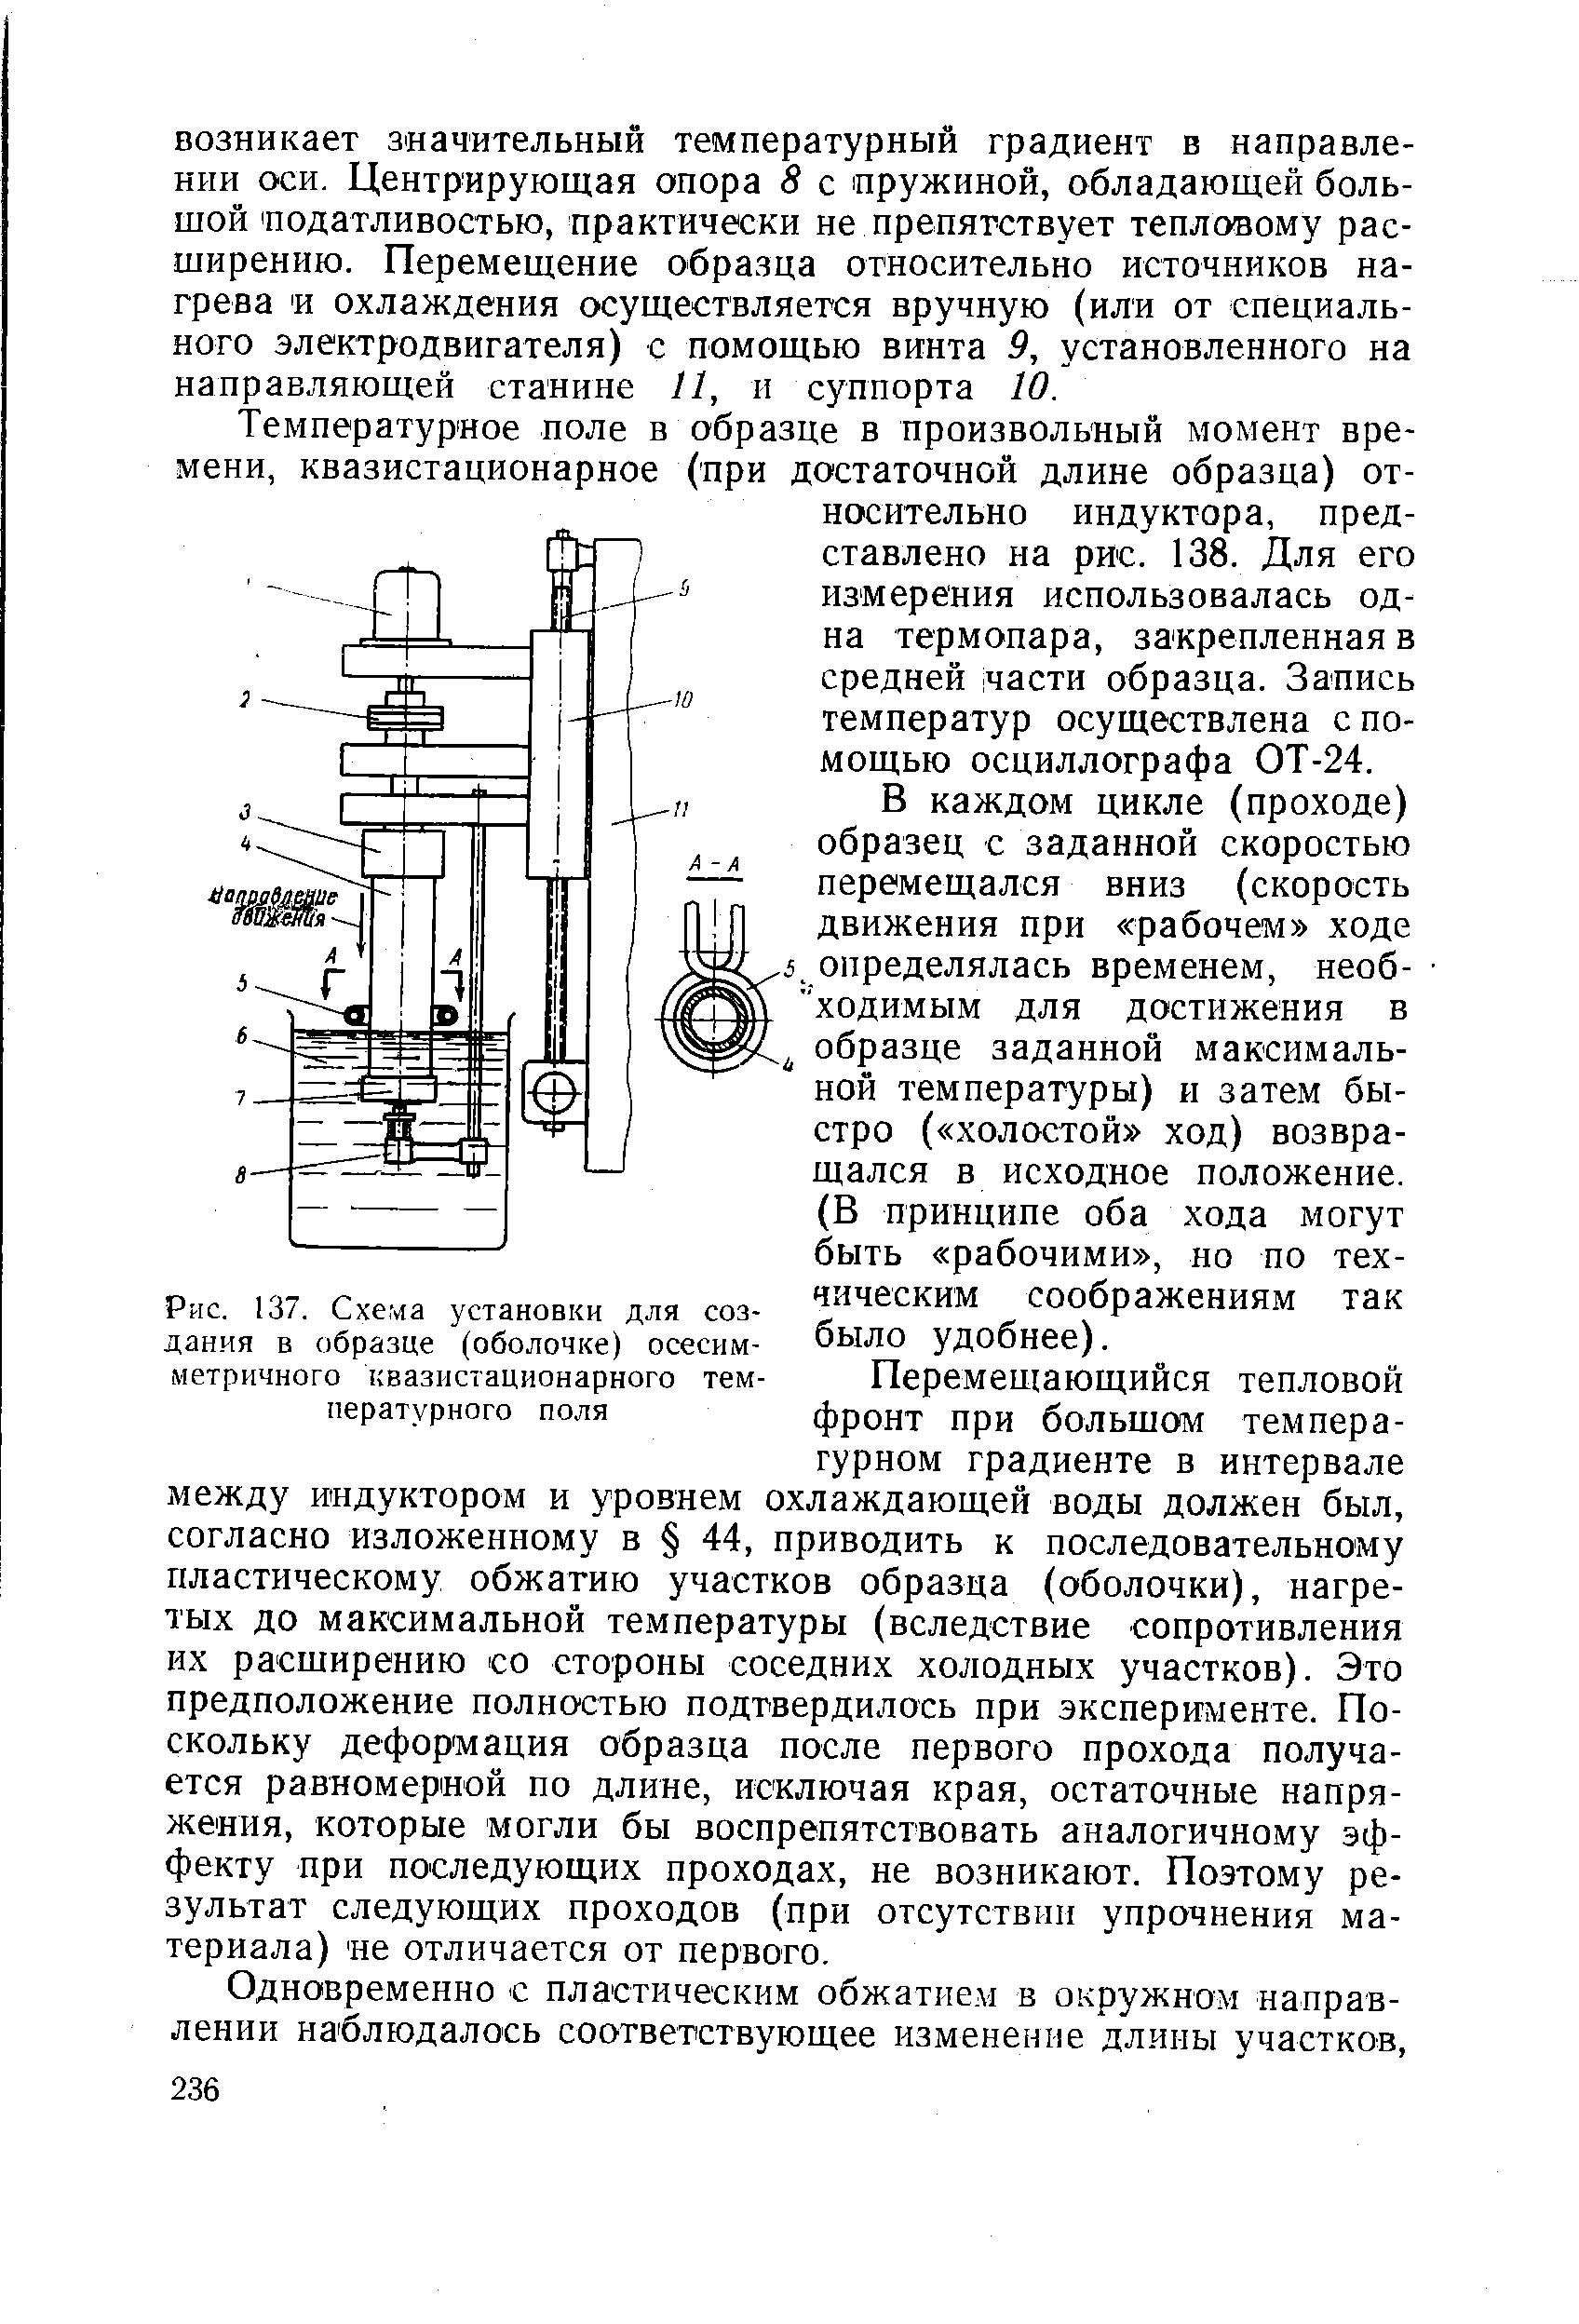 Рис. 137. Схема установки для создания в образце (оболочке) осесимметричного квазистационарного температурного поля
